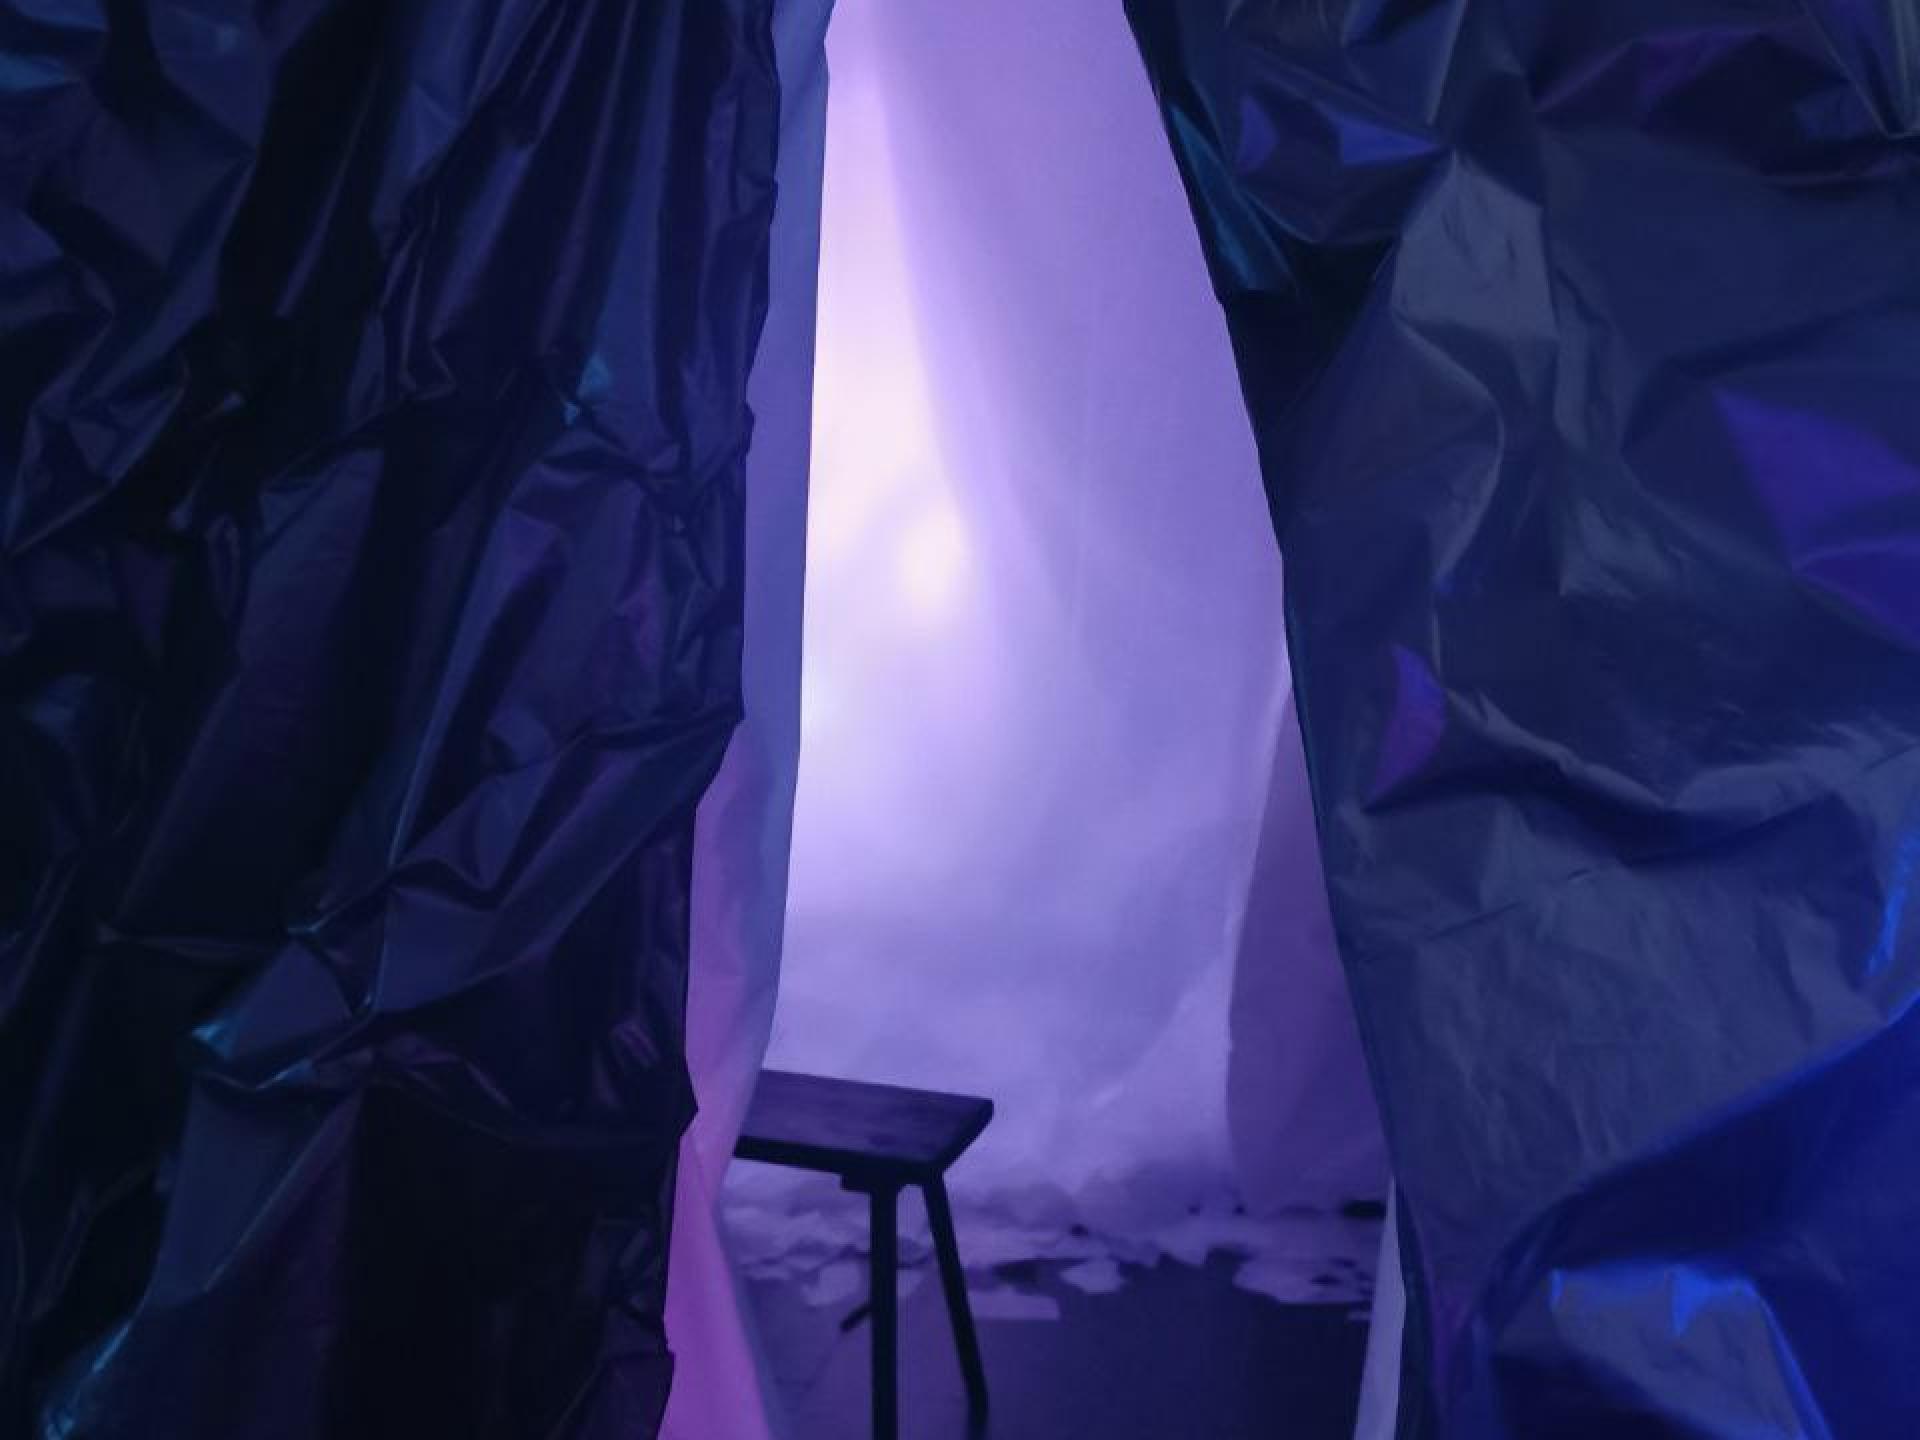 Zu sehen ist das Ende und zwei Beine einer hölzernen Sitzbank in einem Raum mit blau-lila Licht, umgeben von dunklen, lilafarbenen Vorhängen aus Papier oder Stoff.